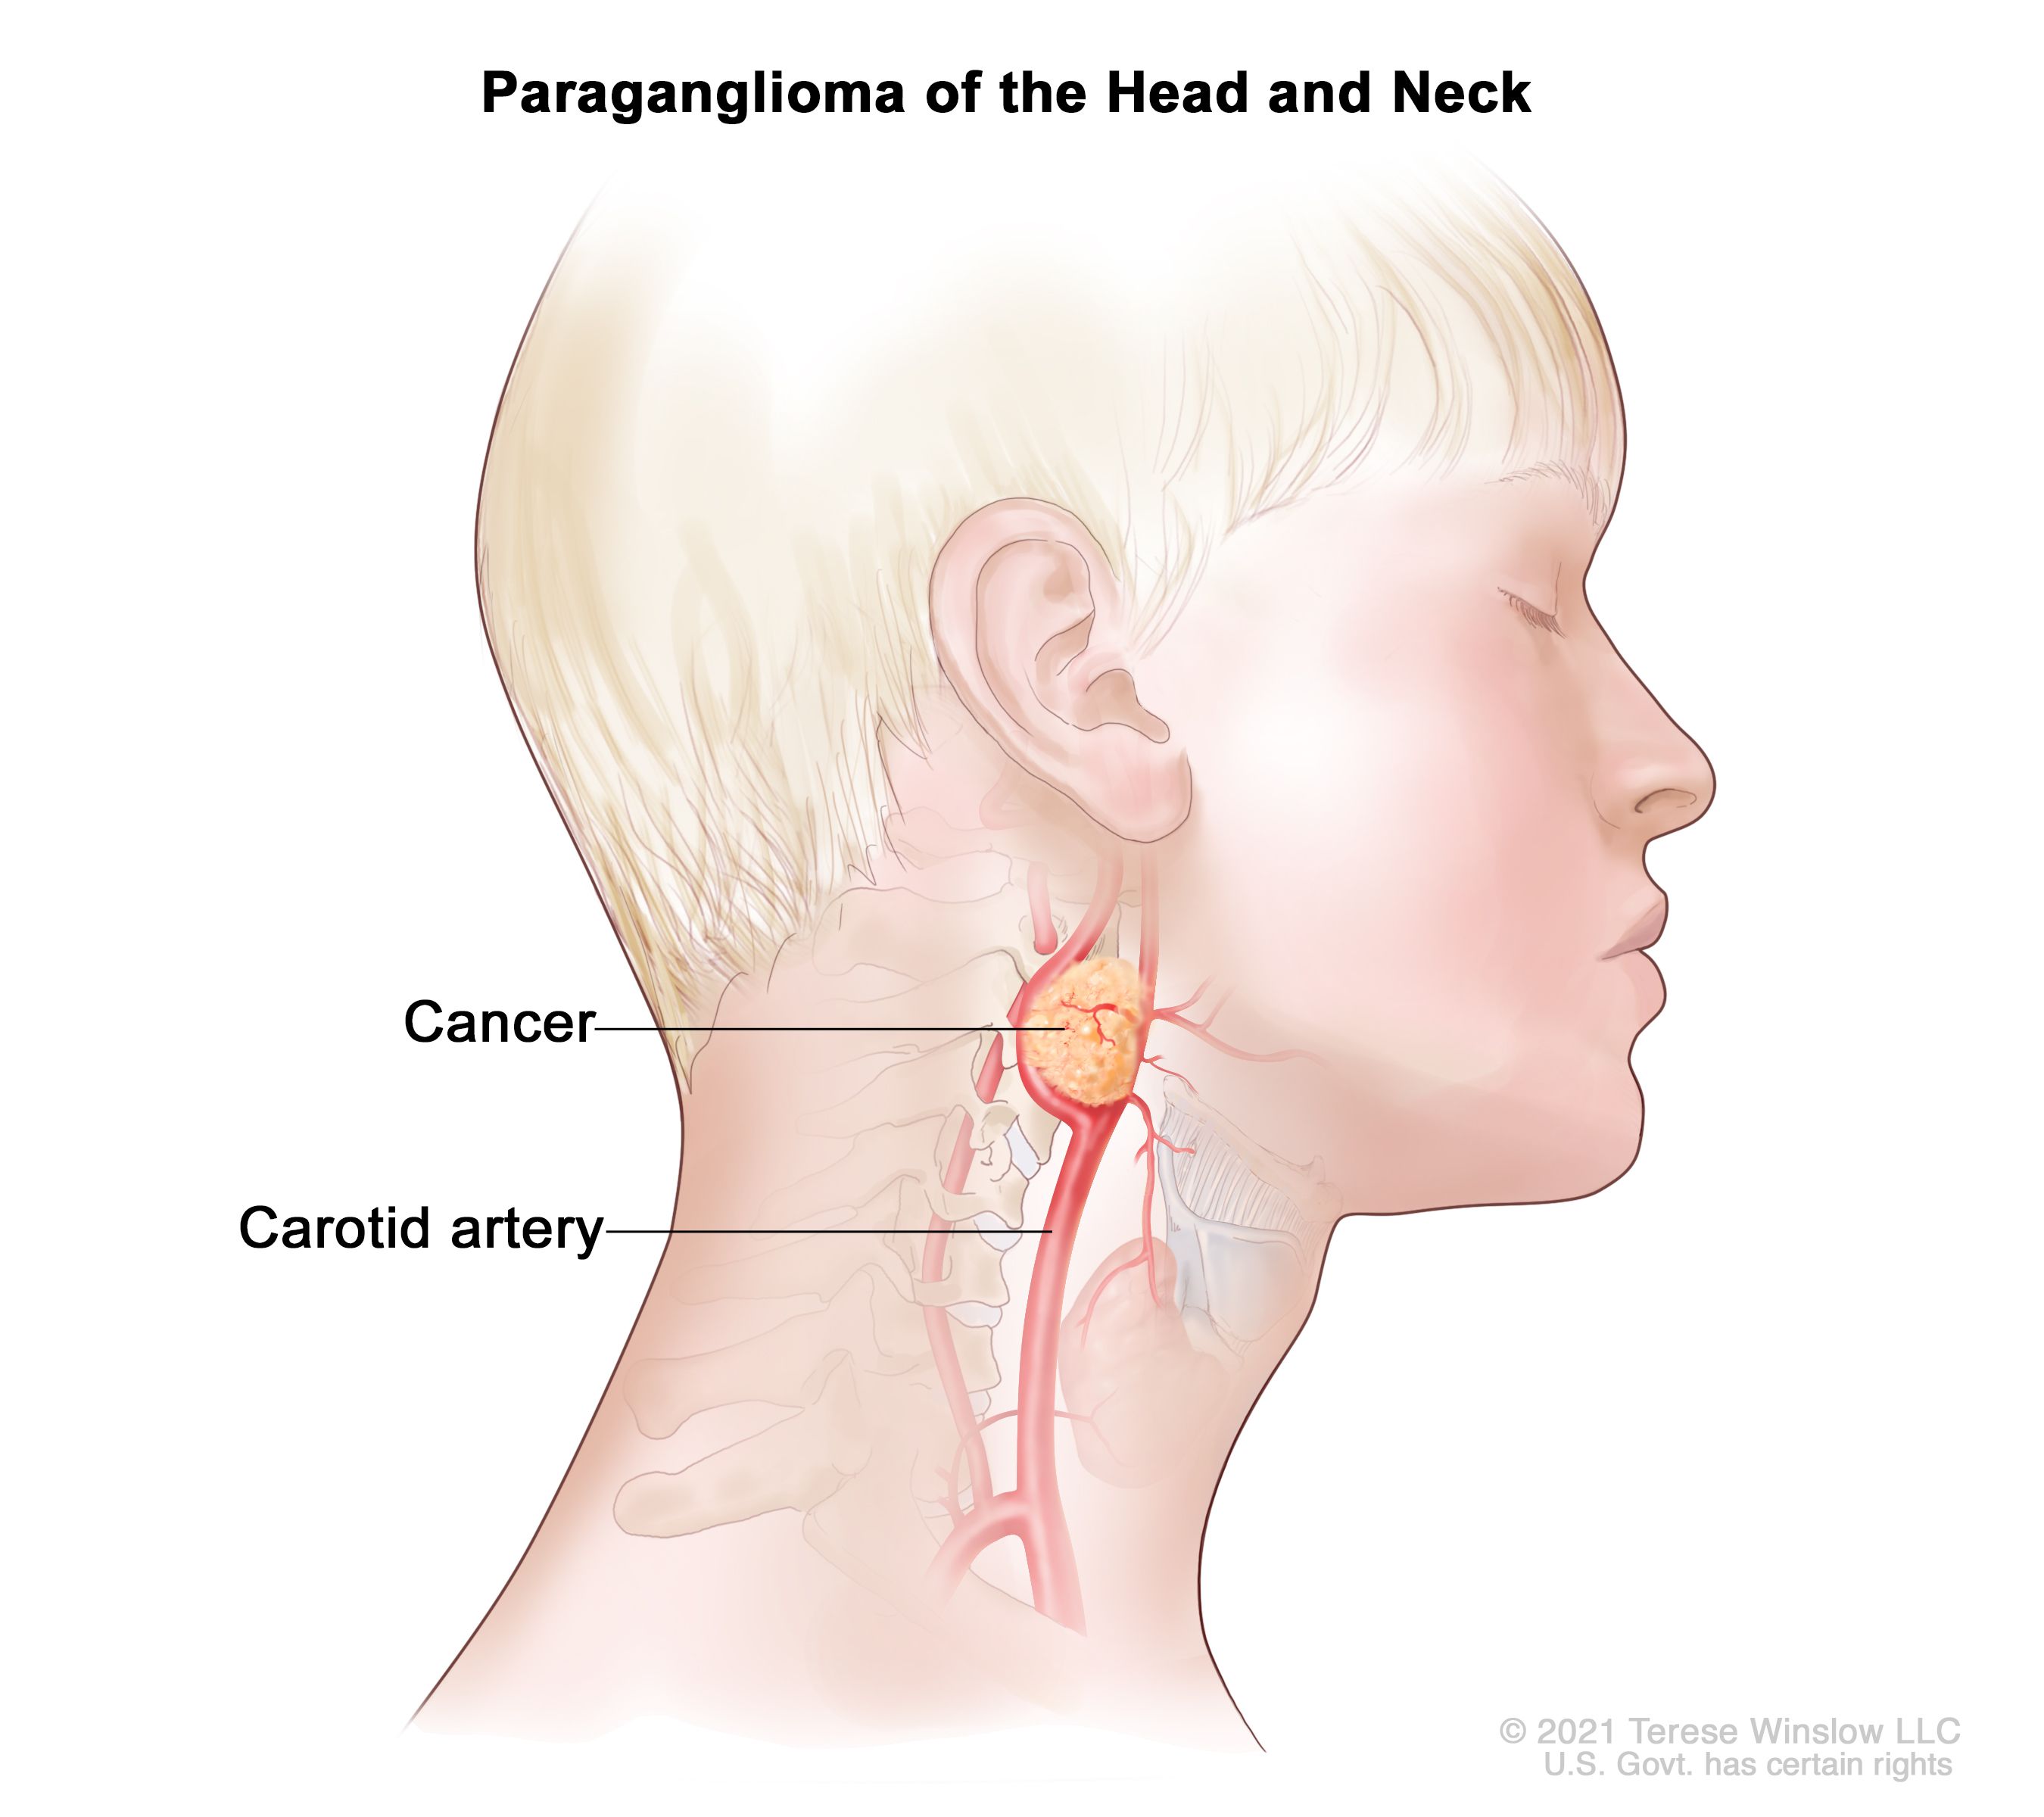 頭頸部の傍神経節腫：図は、頭頸部の頸動脈付近に生じたがん性の腫瘍を示している。